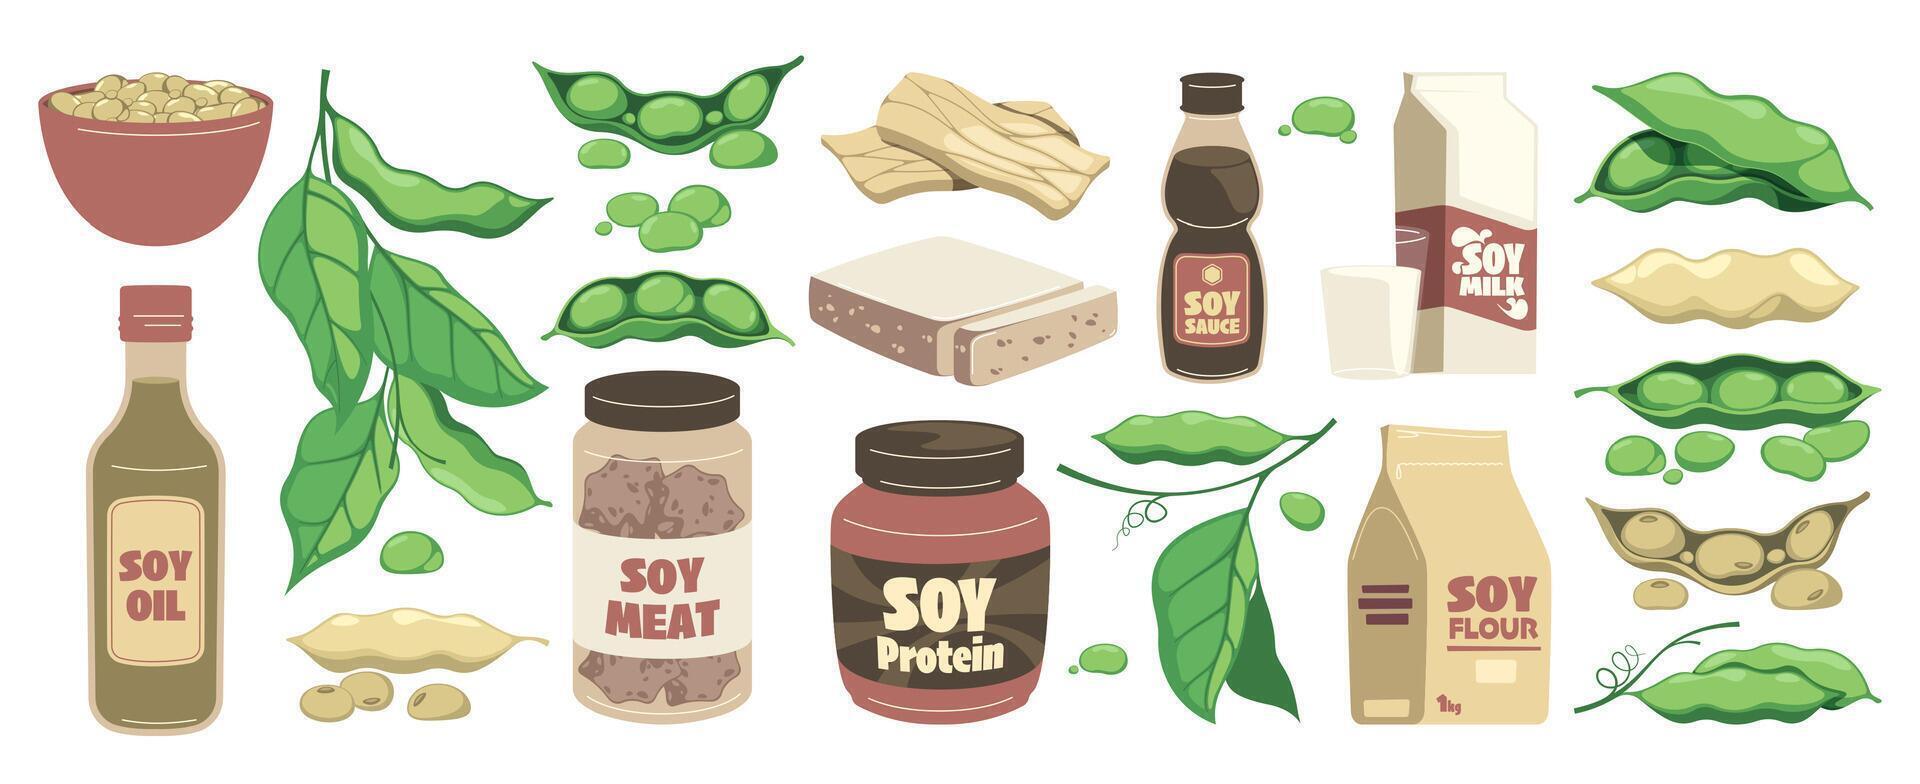 soia fagiolo prodotti. cartone animato biologico cibo con soia soia latte soia tofu Tempeh, vegano vegetariano salutare proteina alternativa. vettore impostato